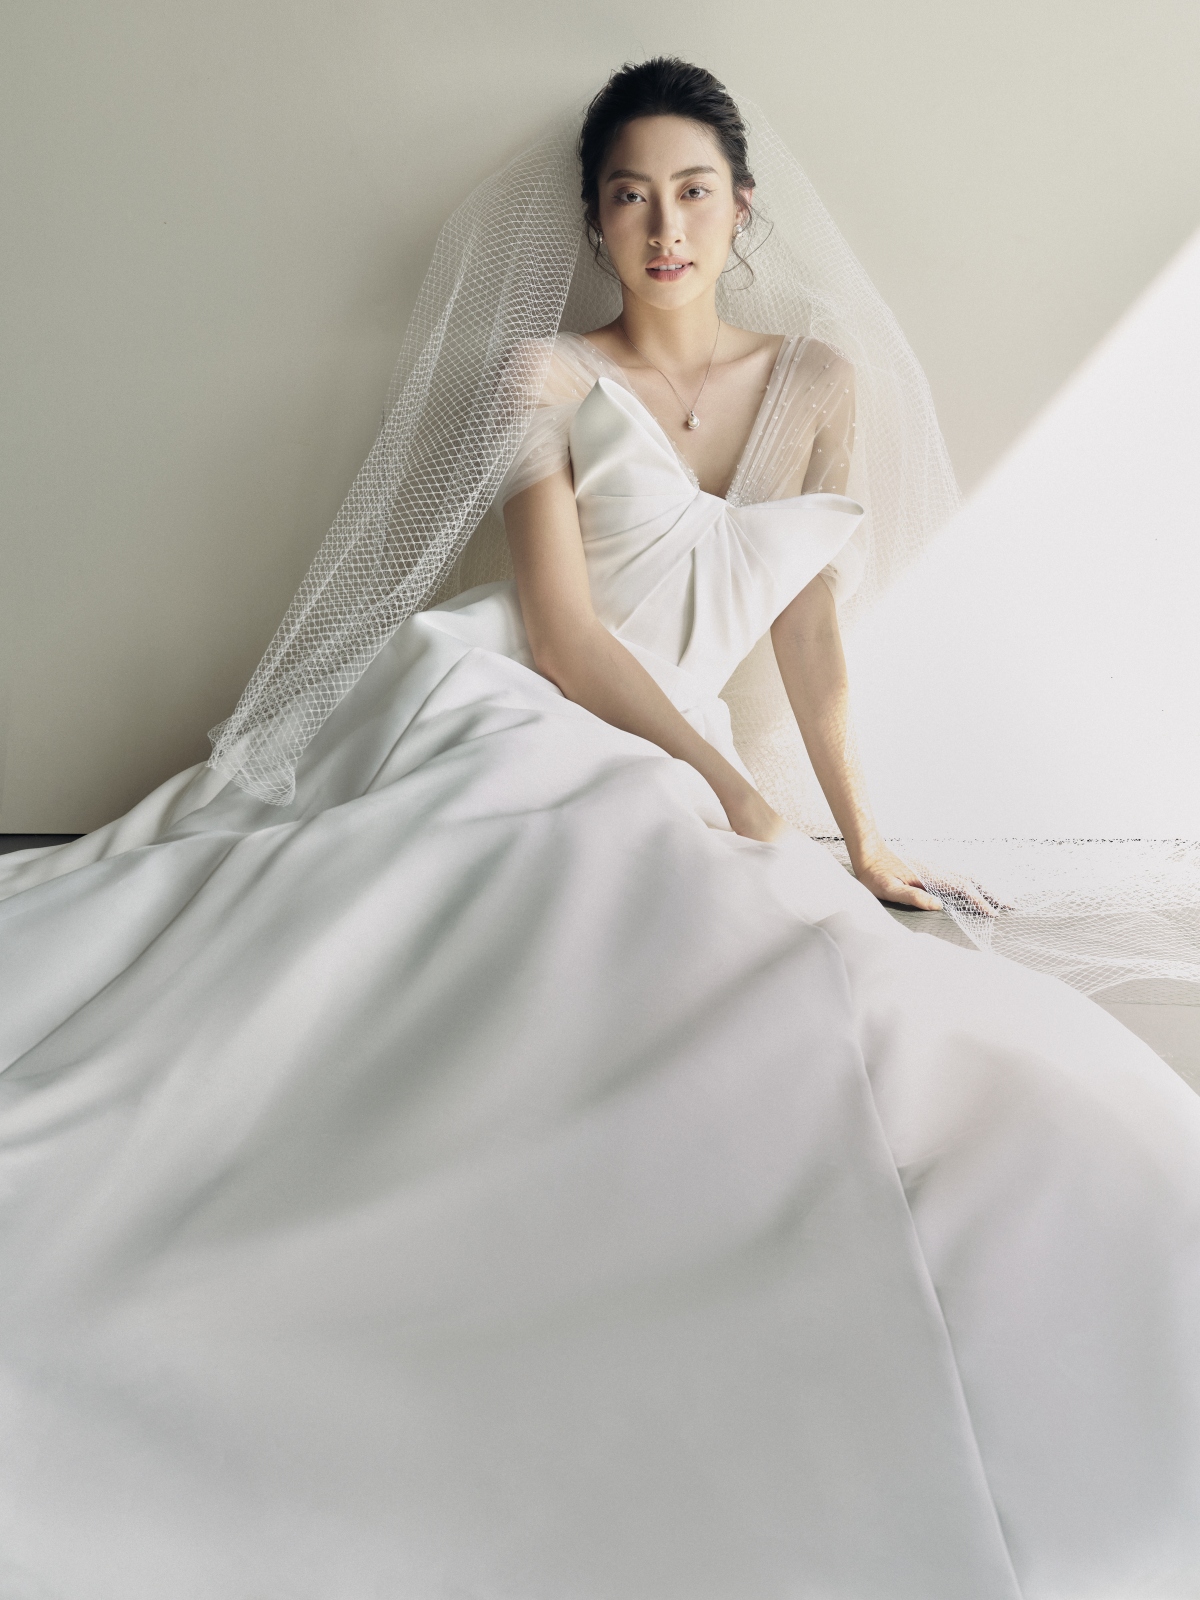 Hoa hậu Lương Thùy Linh làm cô dâu đẹp thanh khiết trong bộ ảnh mới - Ảnh 7.